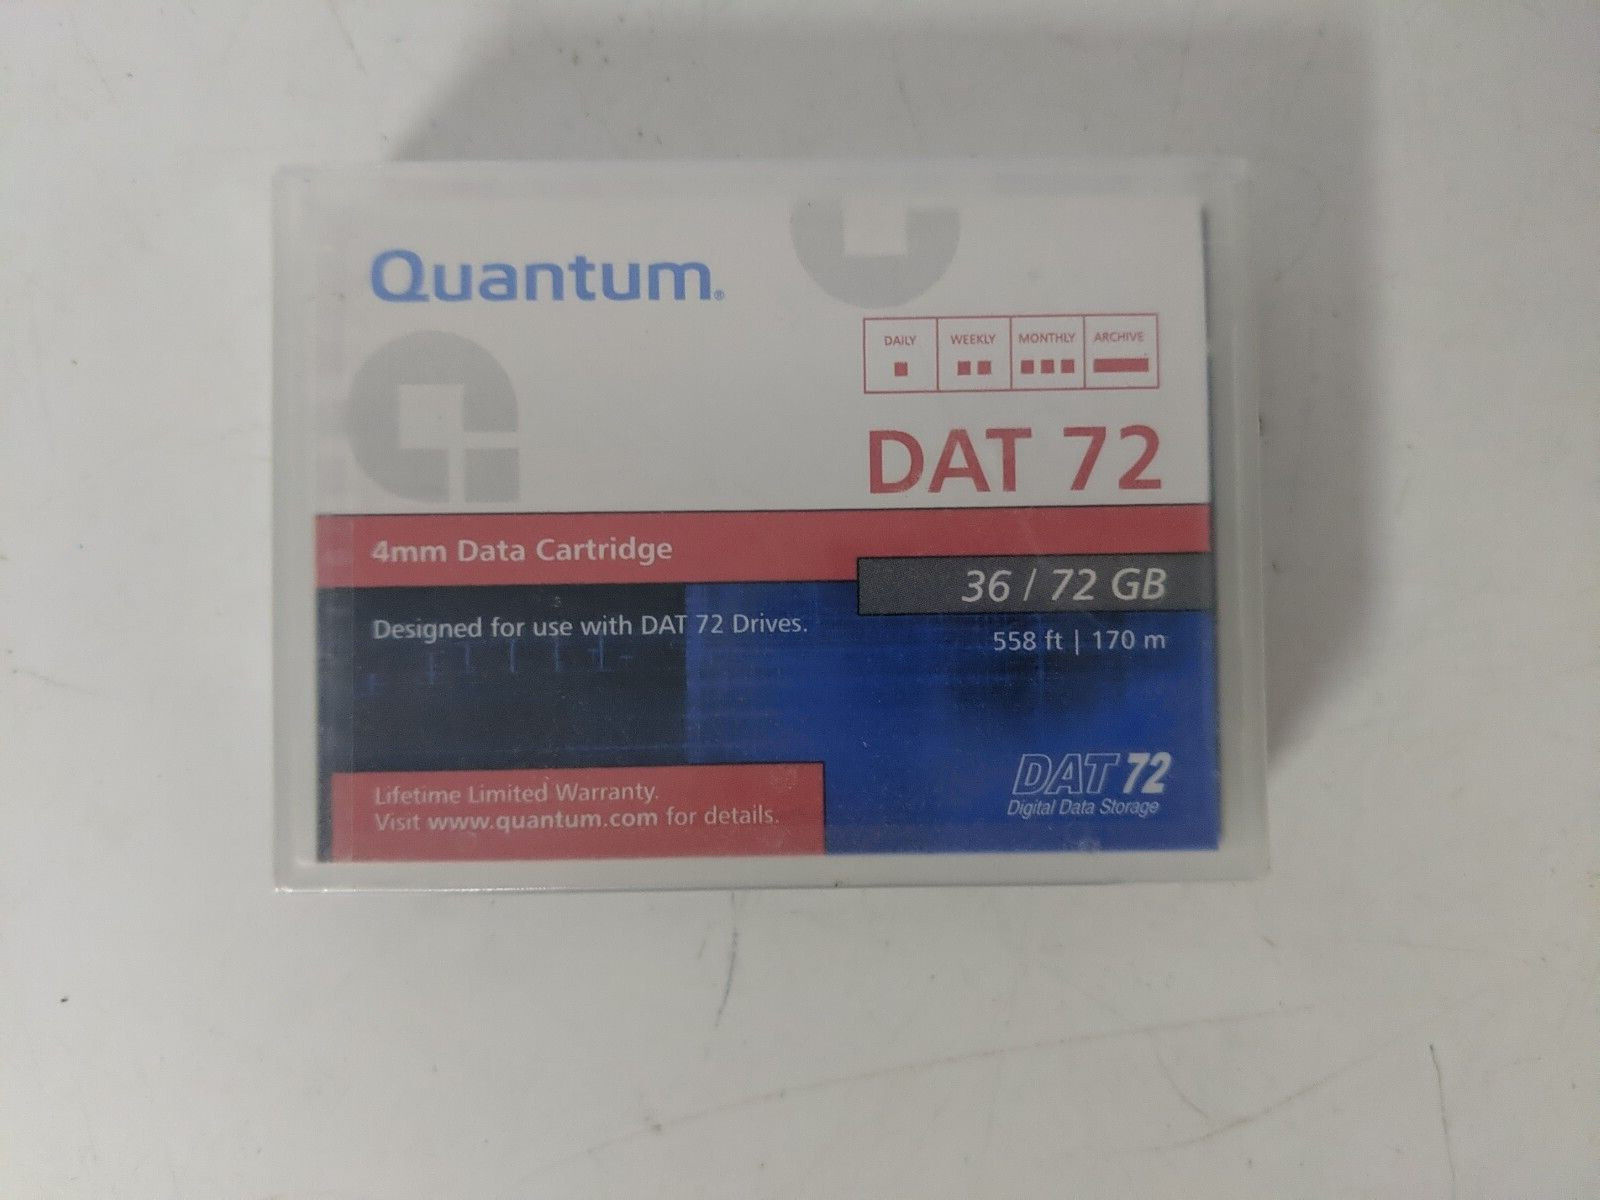 Quantum Dat 72 36/72 GB 4mm Data Cartidge  558ft / 170m